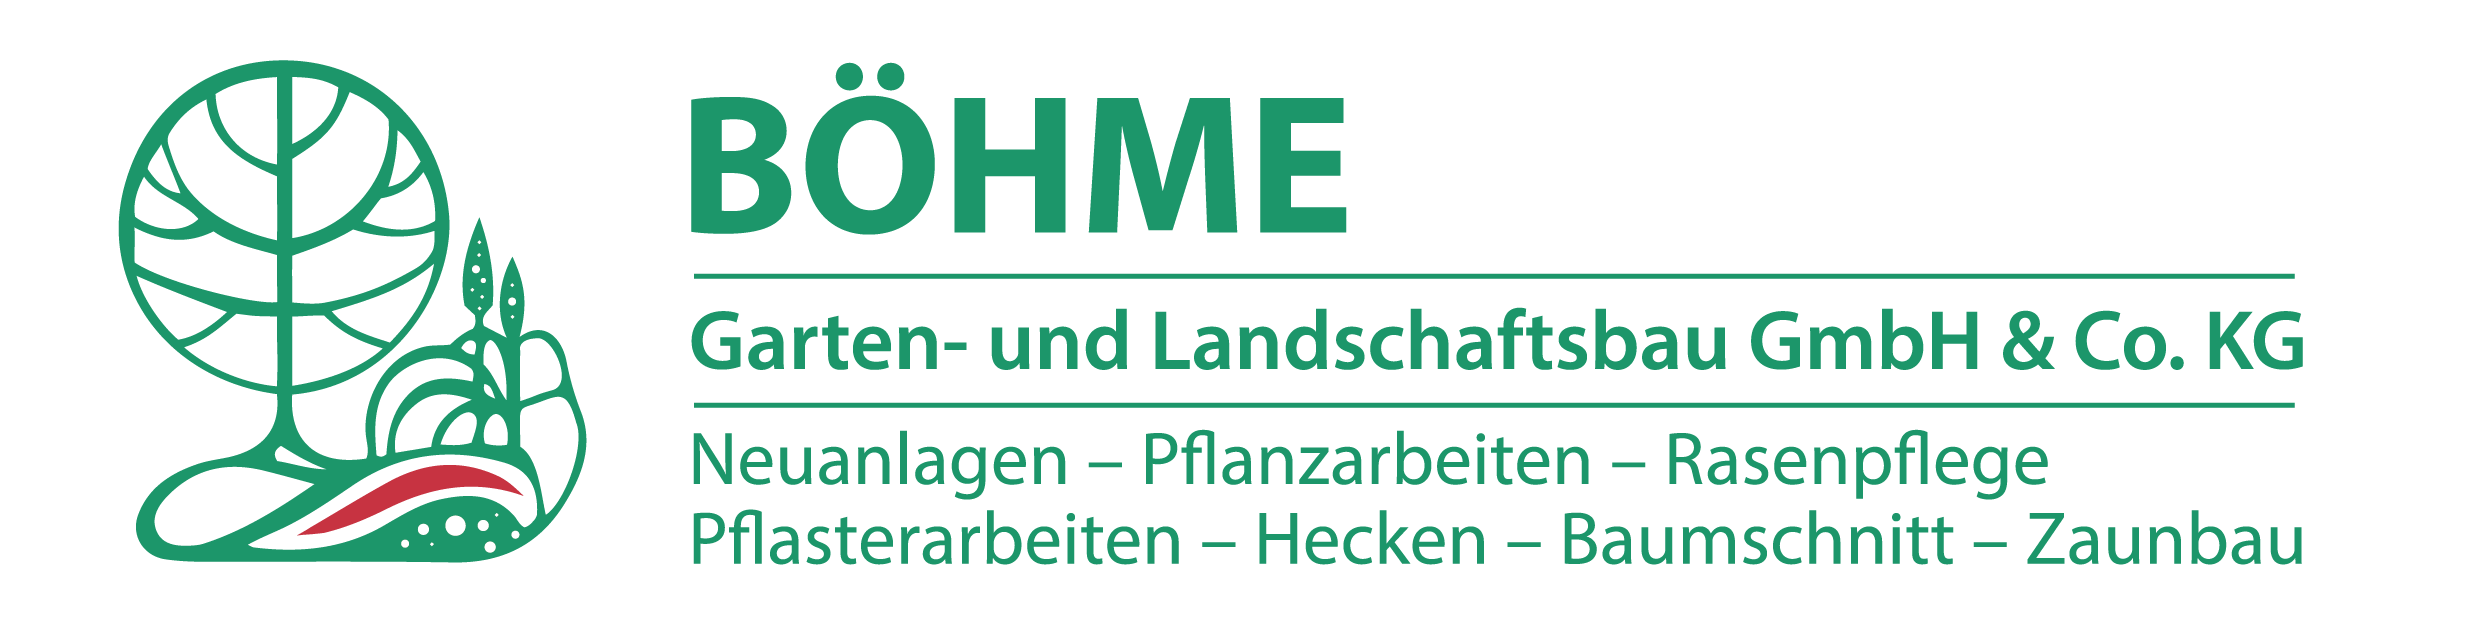 Boehme – Garten und Landschaftsbau GmbH & Co. KG